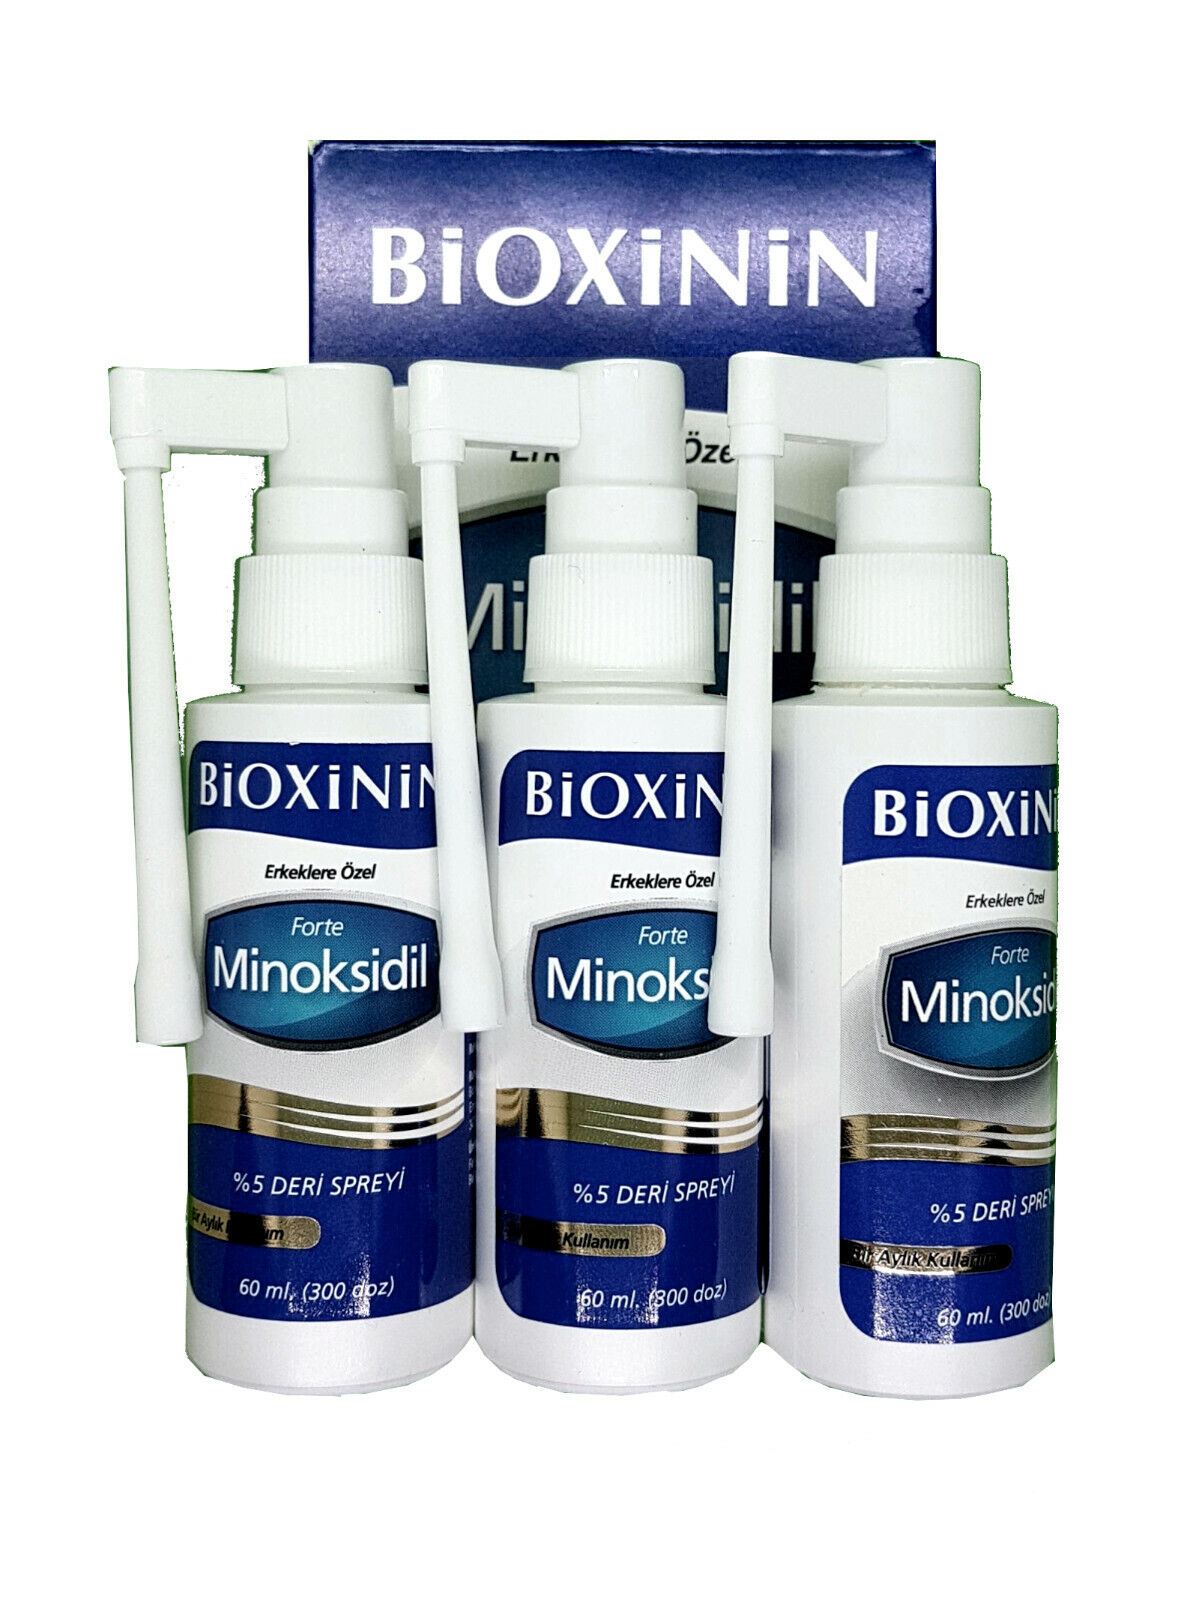 BIOXININ 5% Minoxidil Spray Männer gegen Haarausfall, fördert Haarwuchs 3 Monate